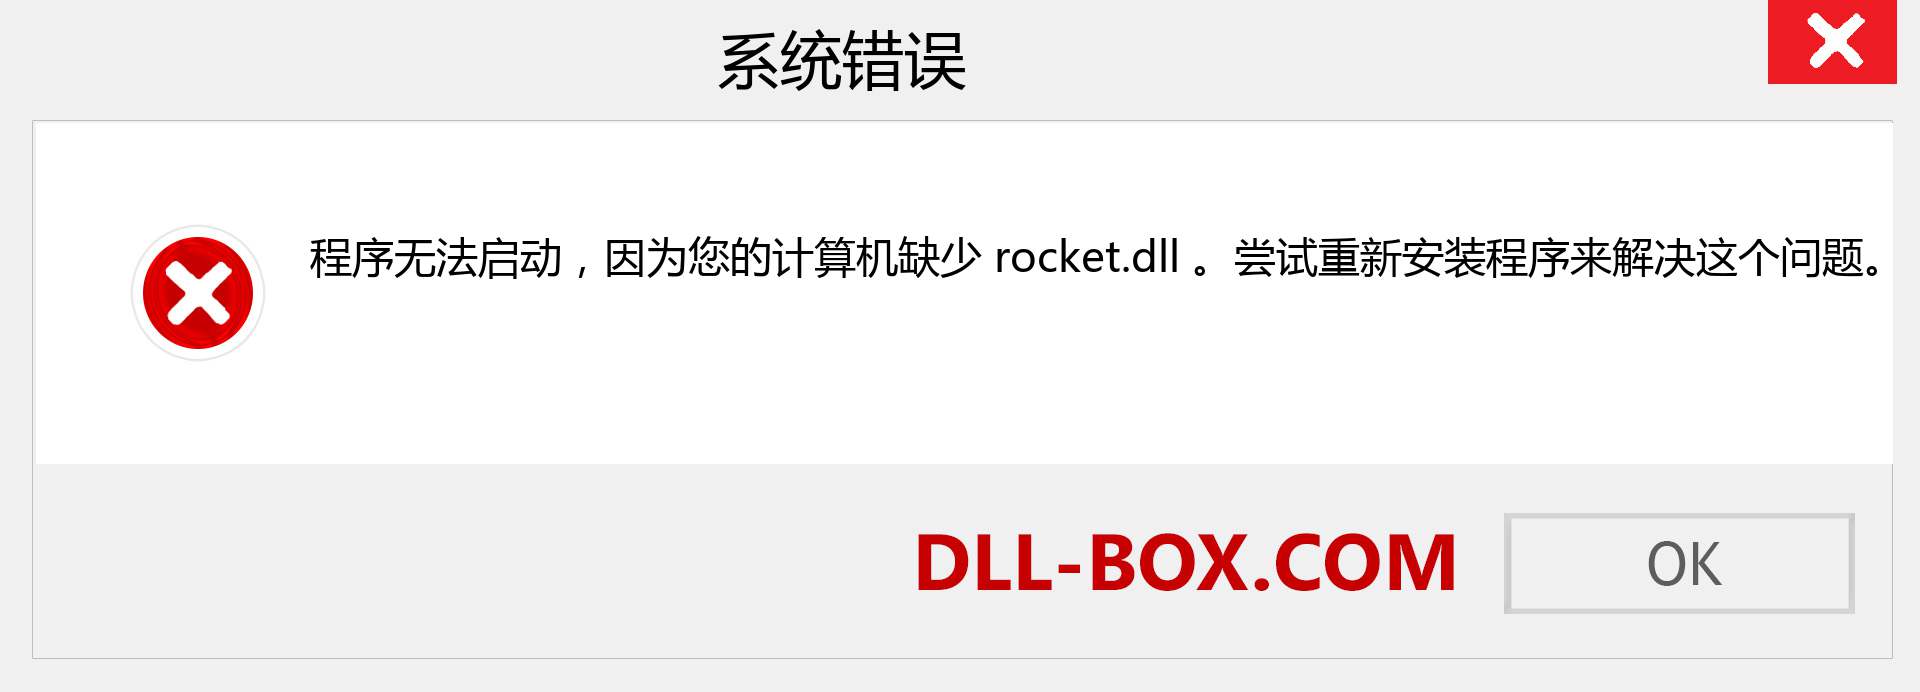 rocket.dll 文件丢失？。 适用于 Windows 7、8、10 的下载 - 修复 Windows、照片、图像上的 rocket dll 丢失错误